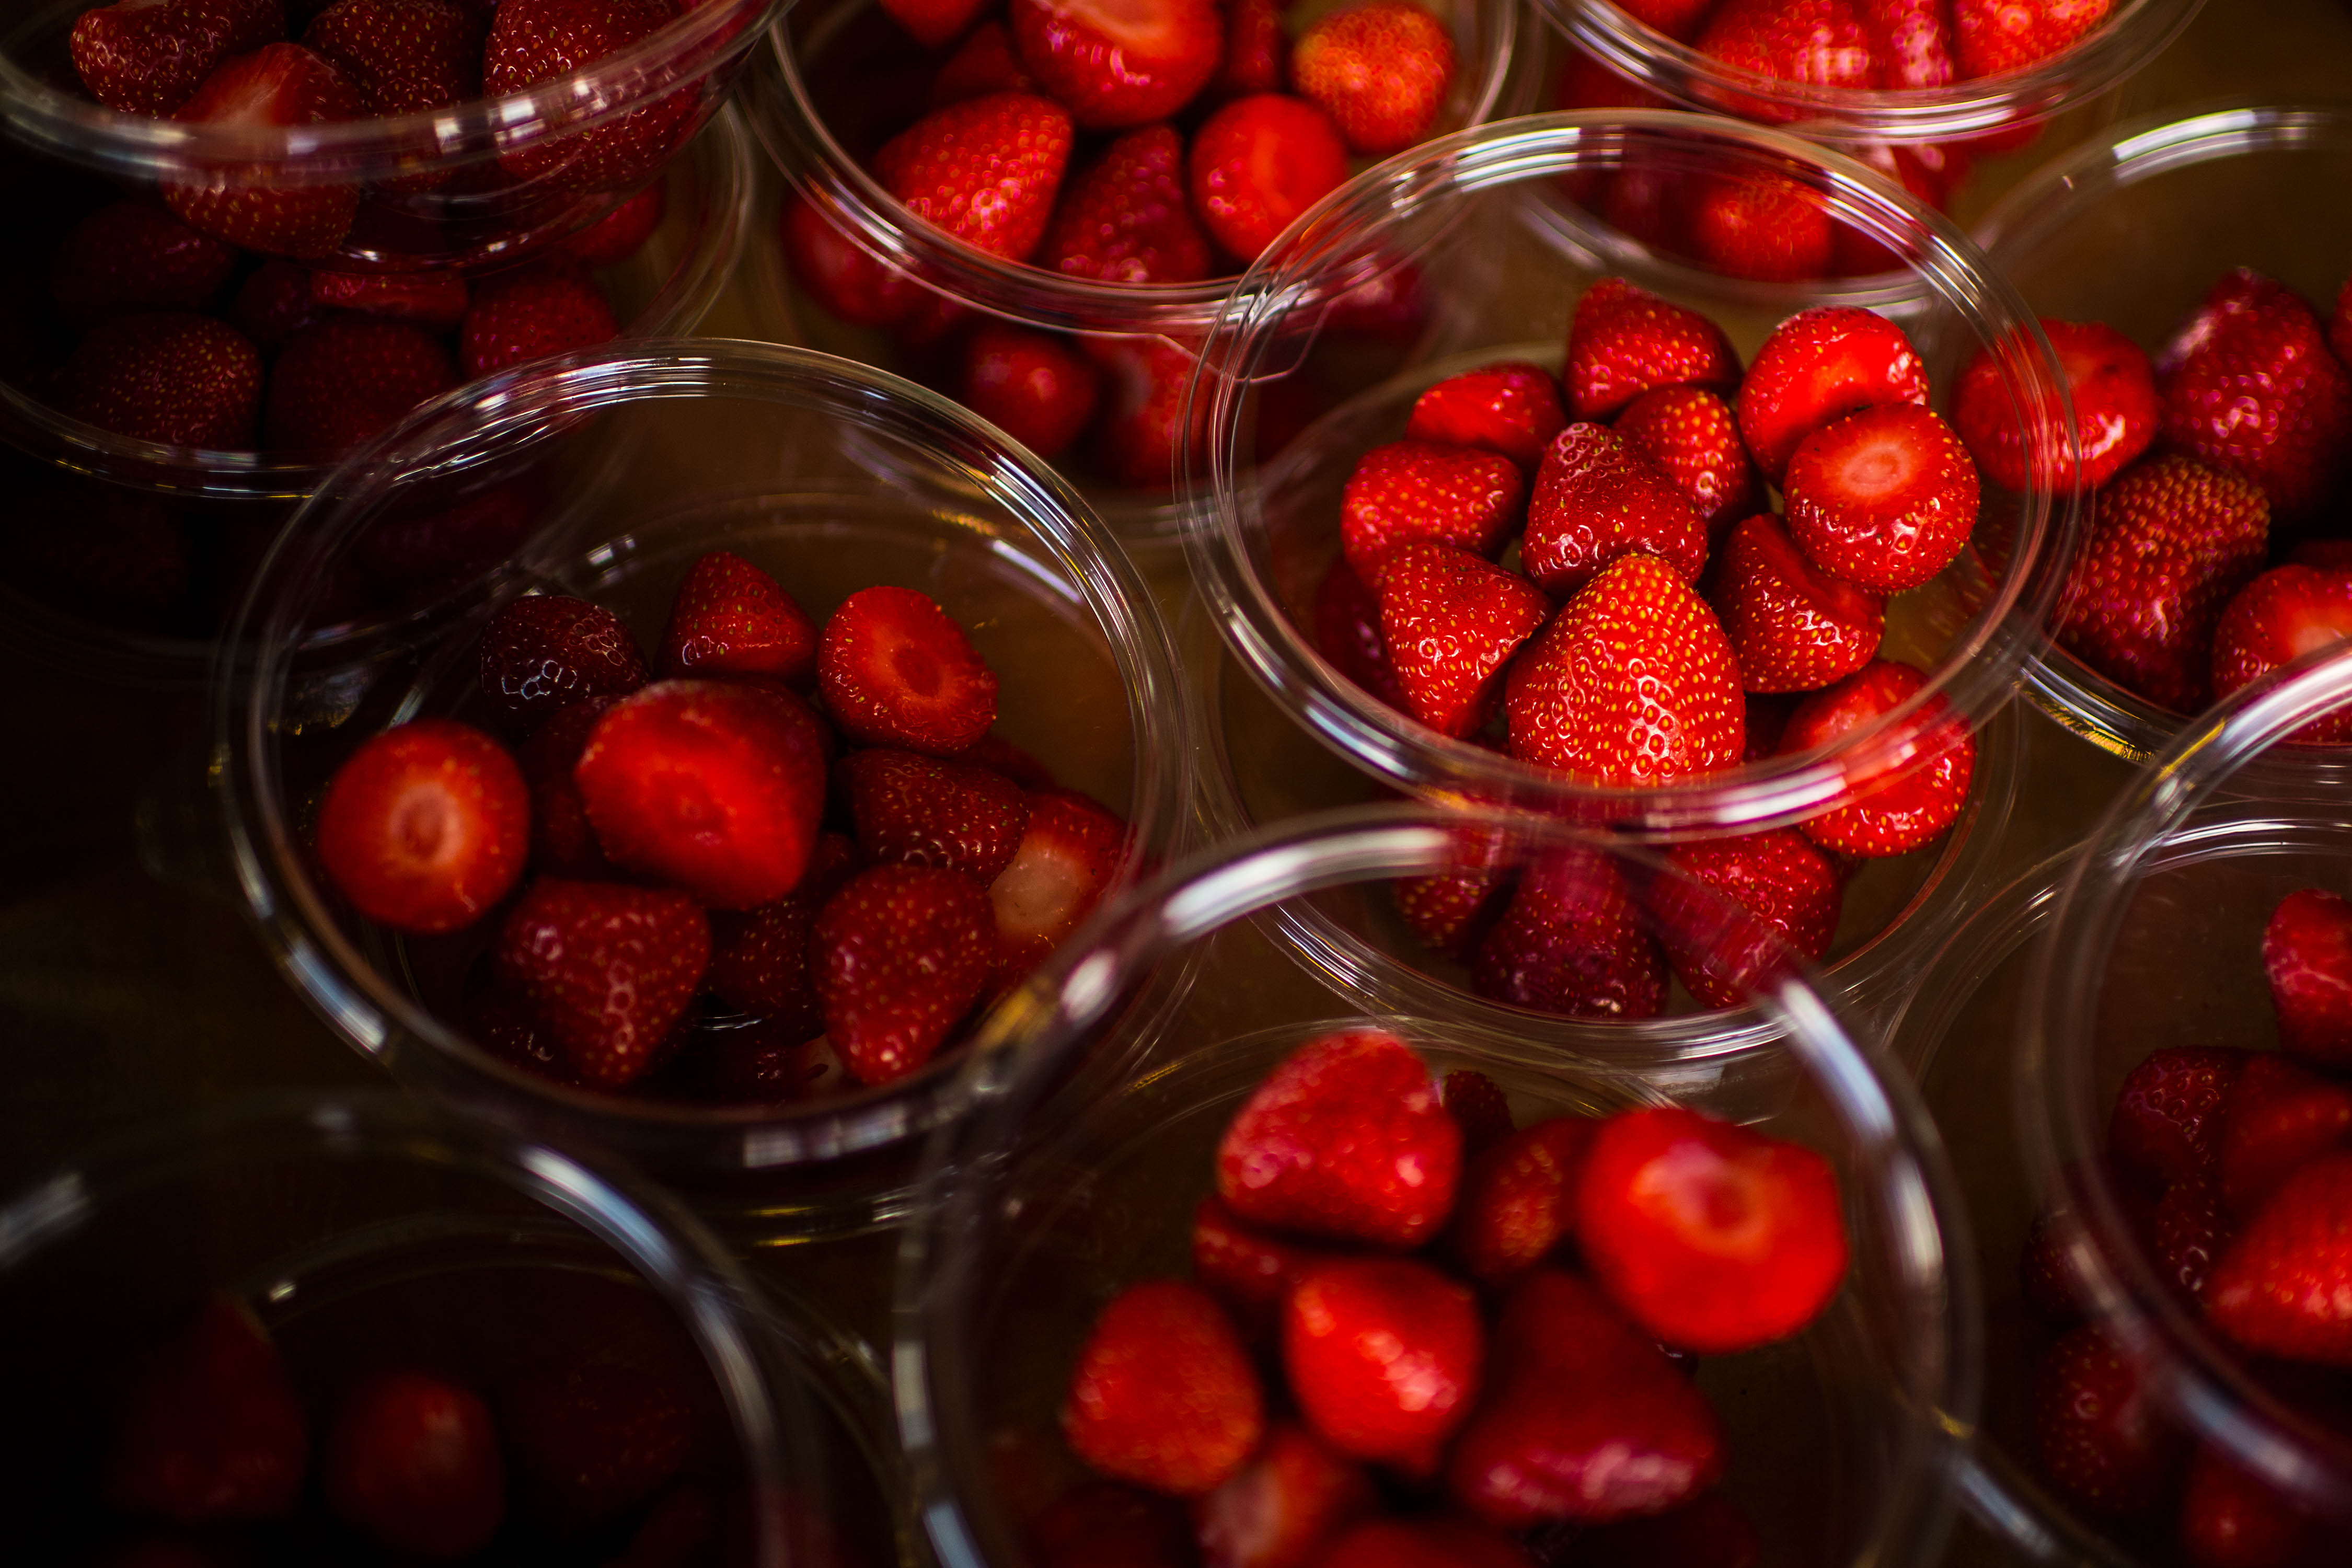 Las fresas son la fruta con más pesticidas según estudio